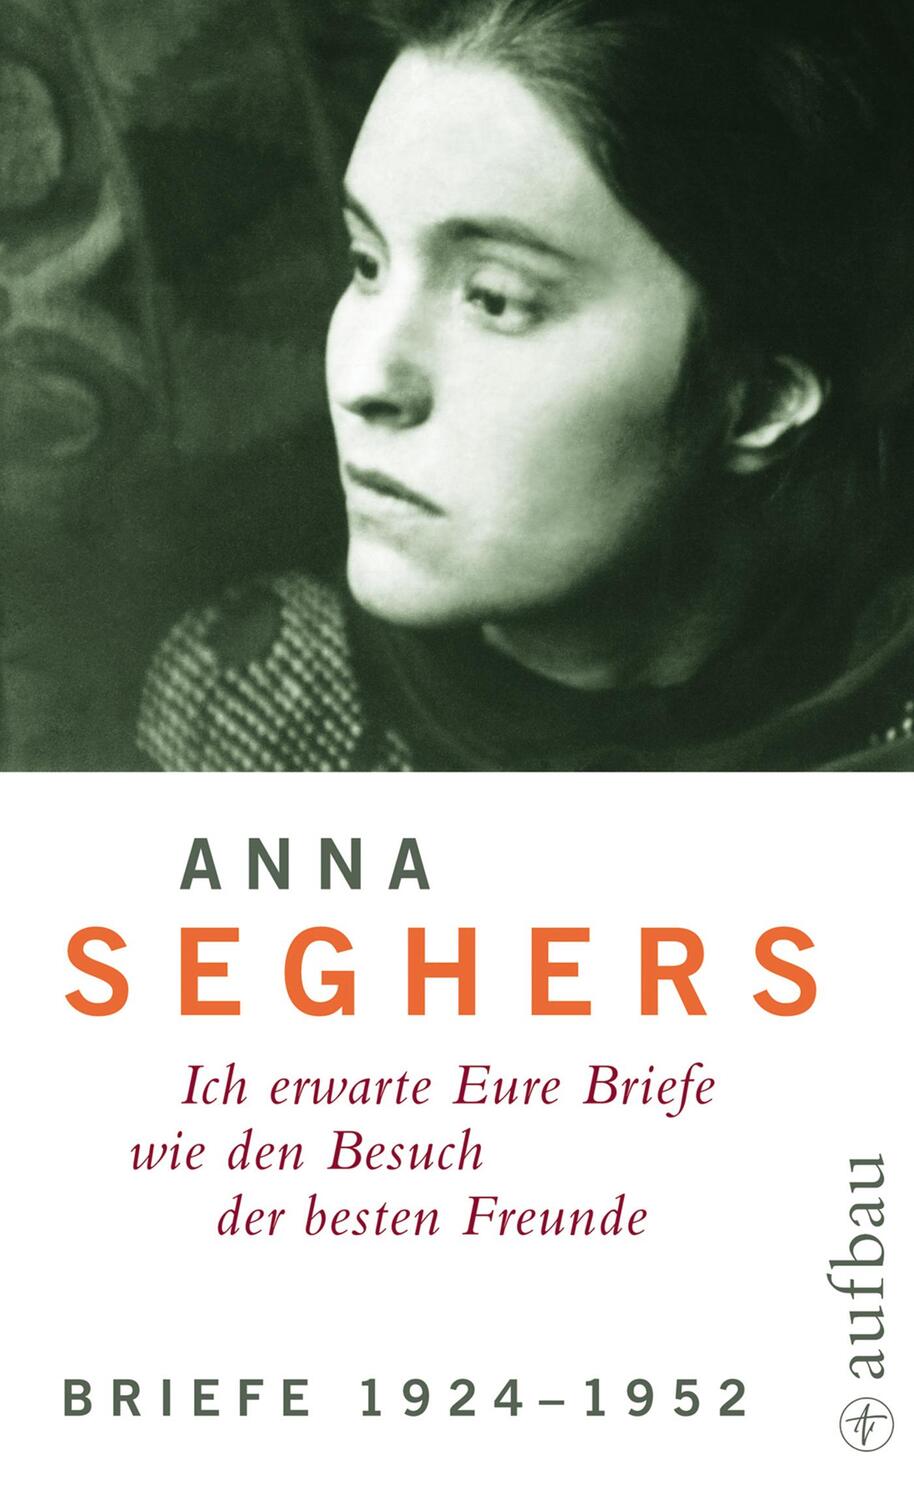 Briefe 1924 - 1952 - Seghers, Anna